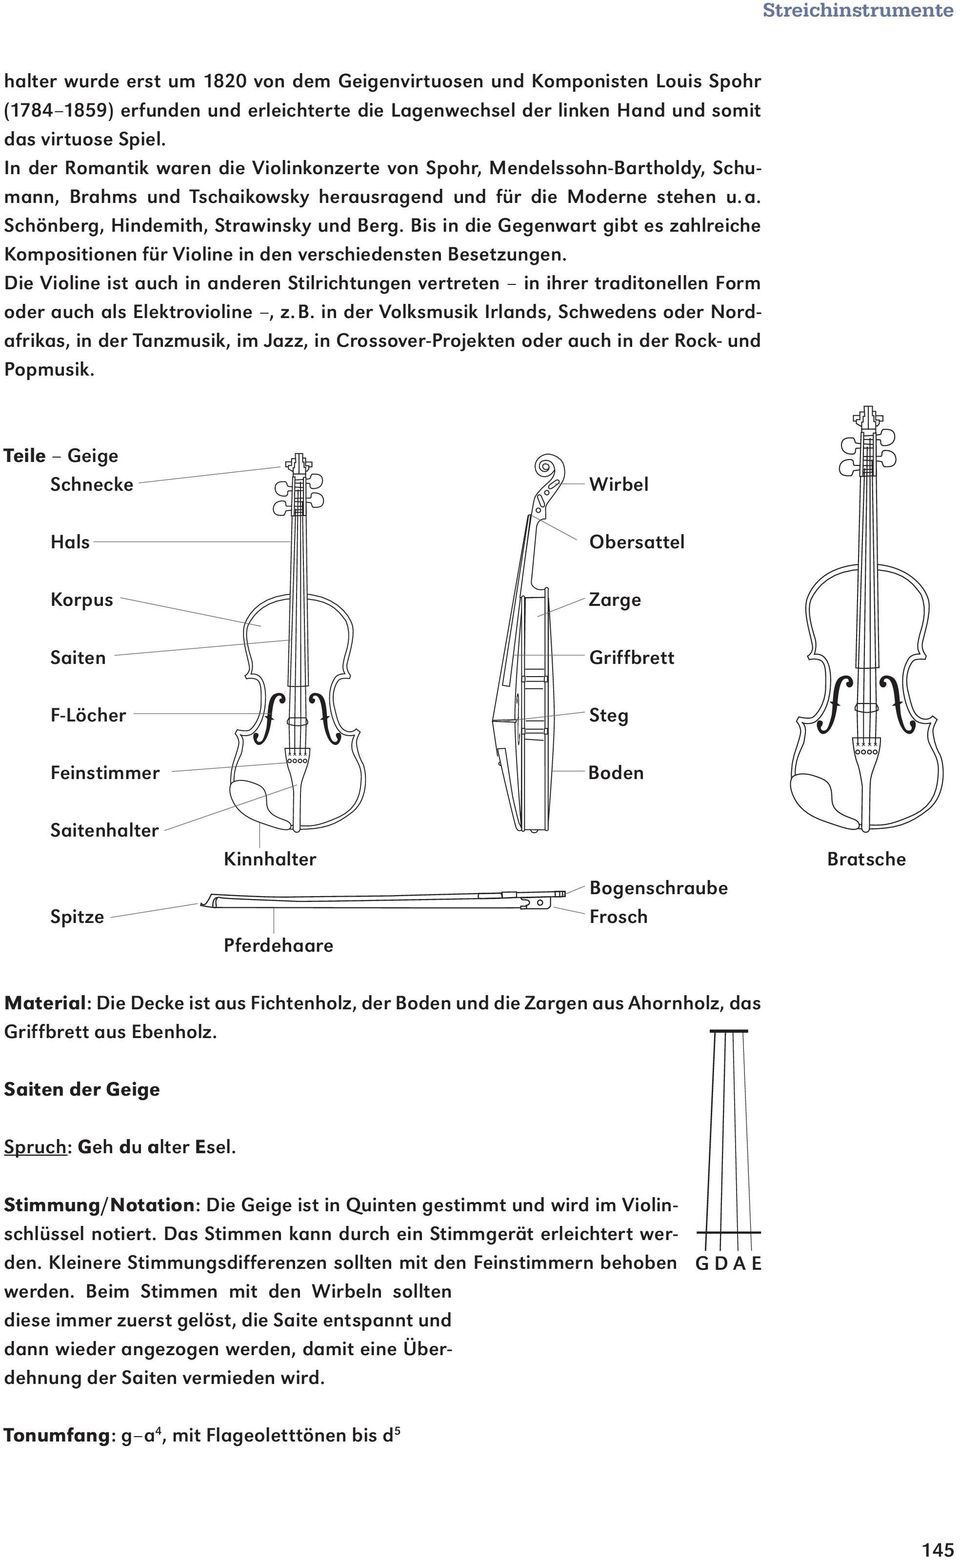 Bis in die Gegenwart gibt es zahlreiche Kompositionen für Violine in den verschiedensten Besetzungen.